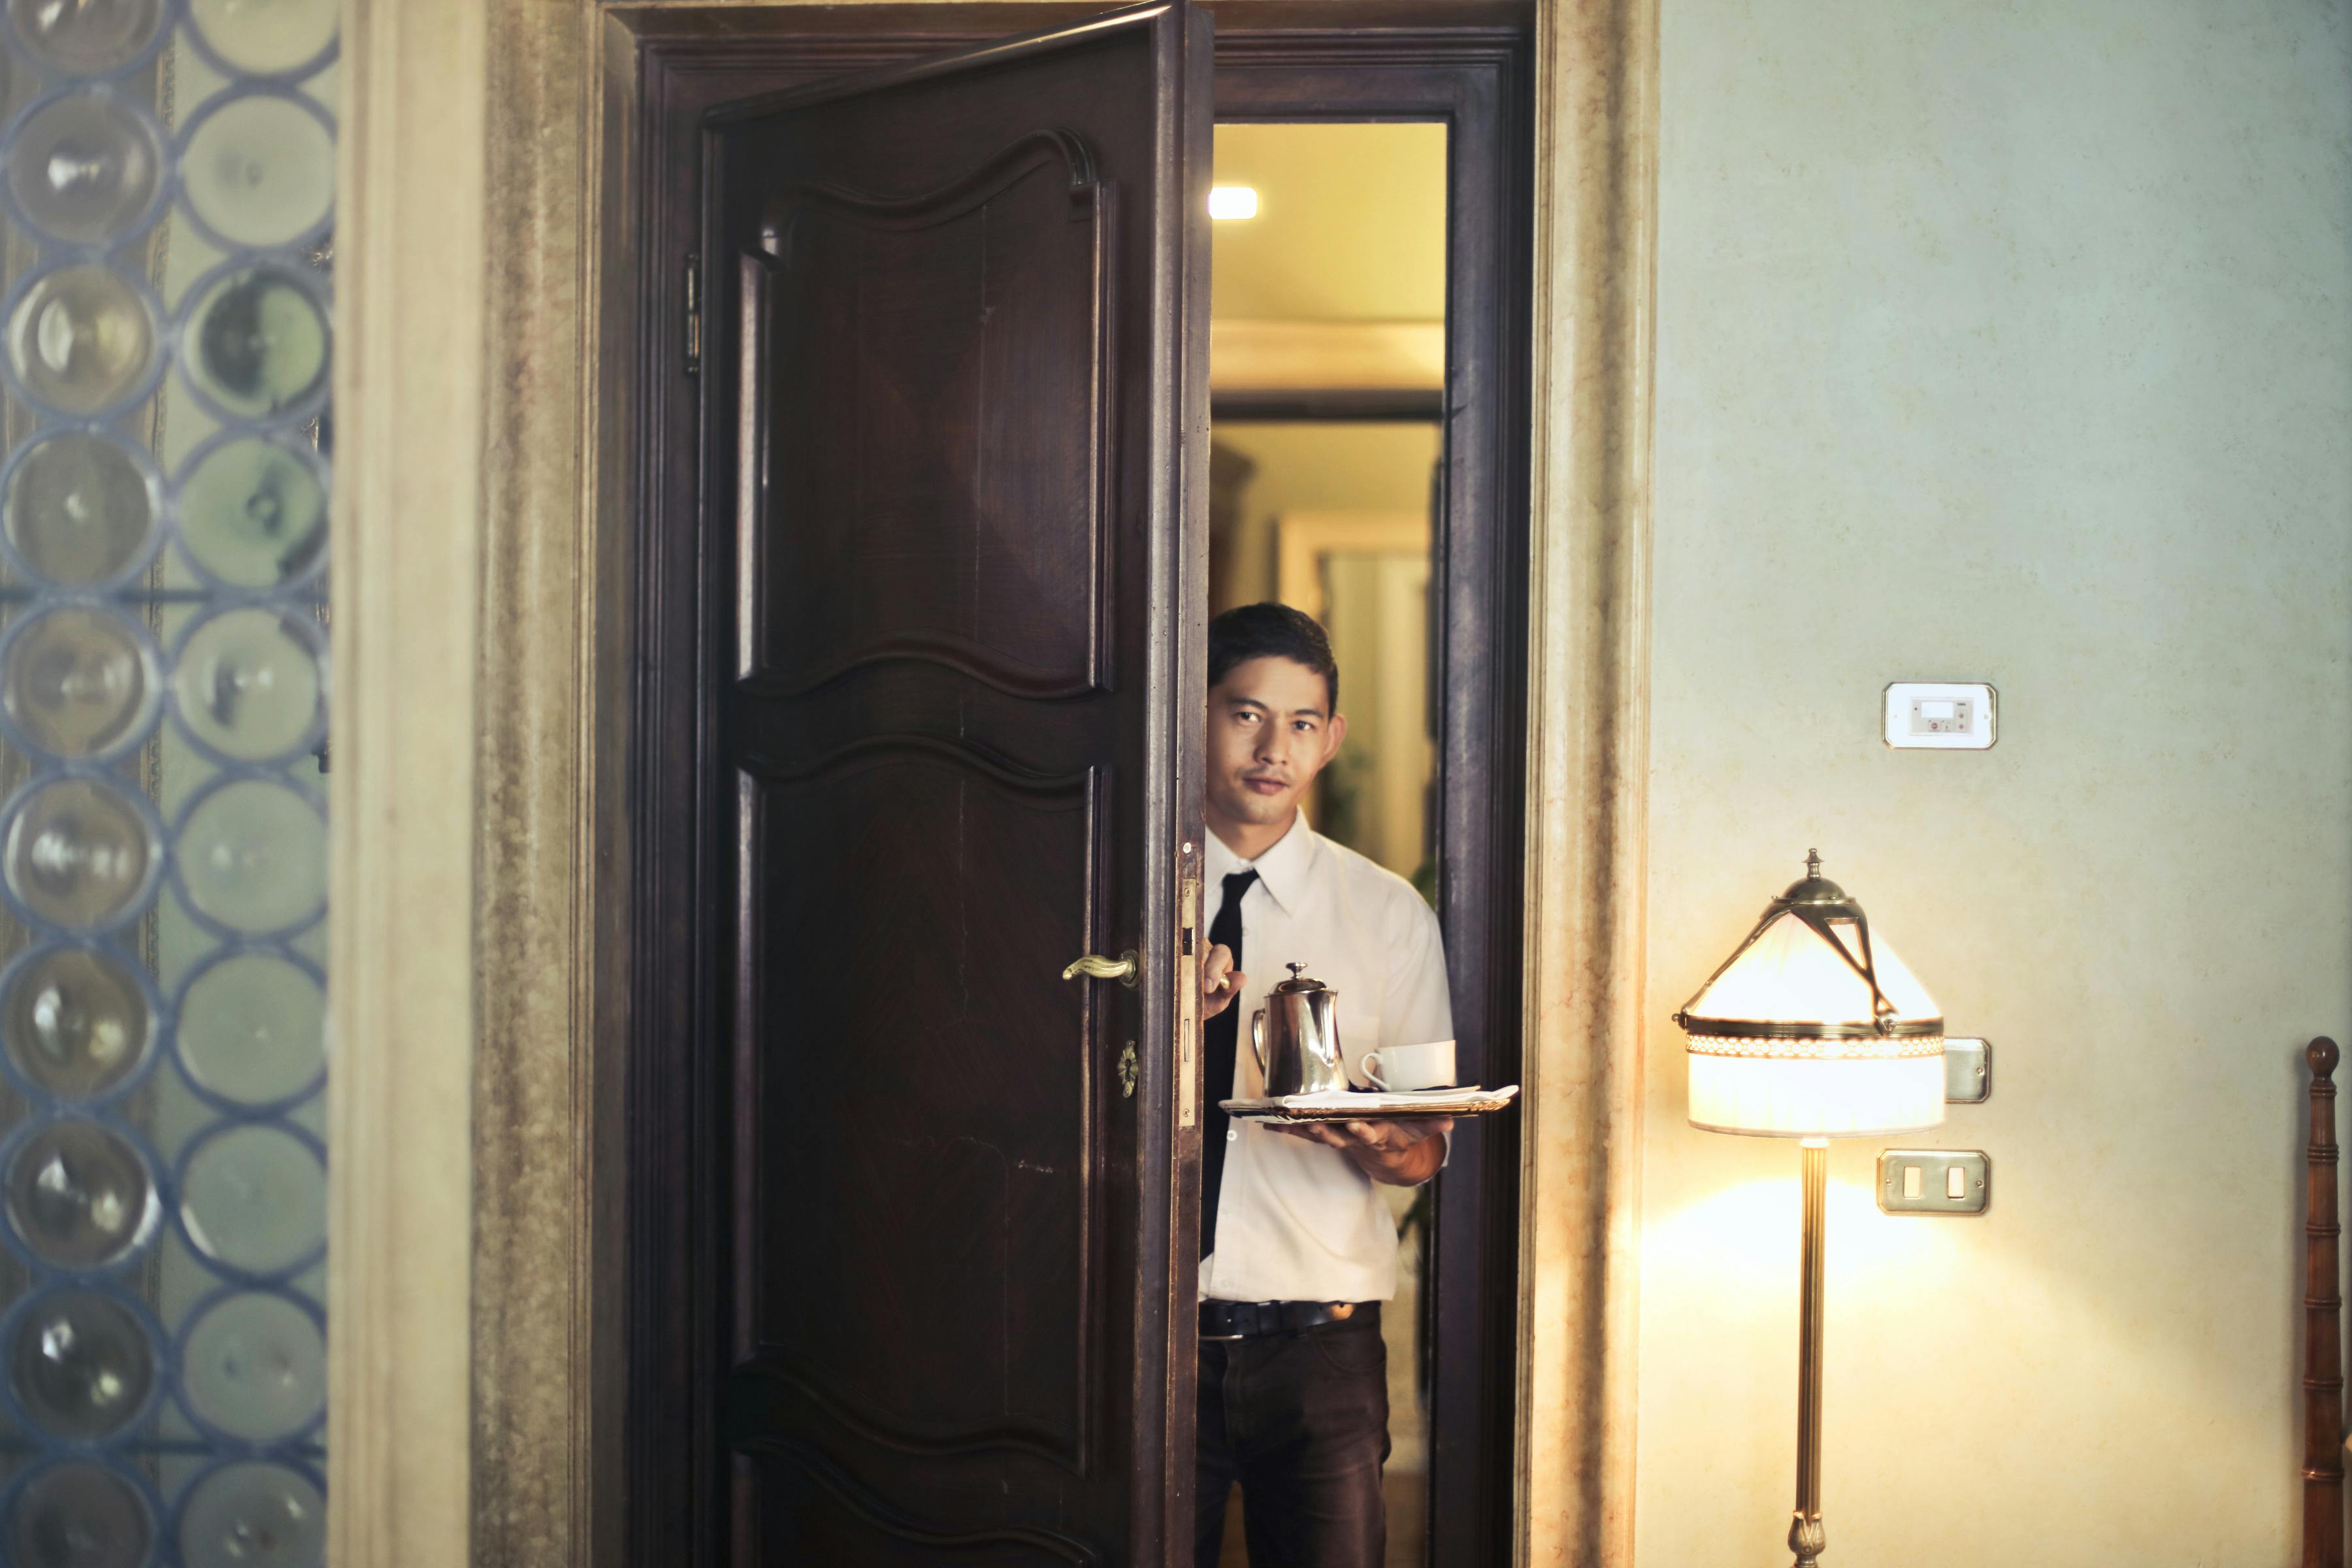 Director de hotel entrando en una habitación | Fuente: Pexels